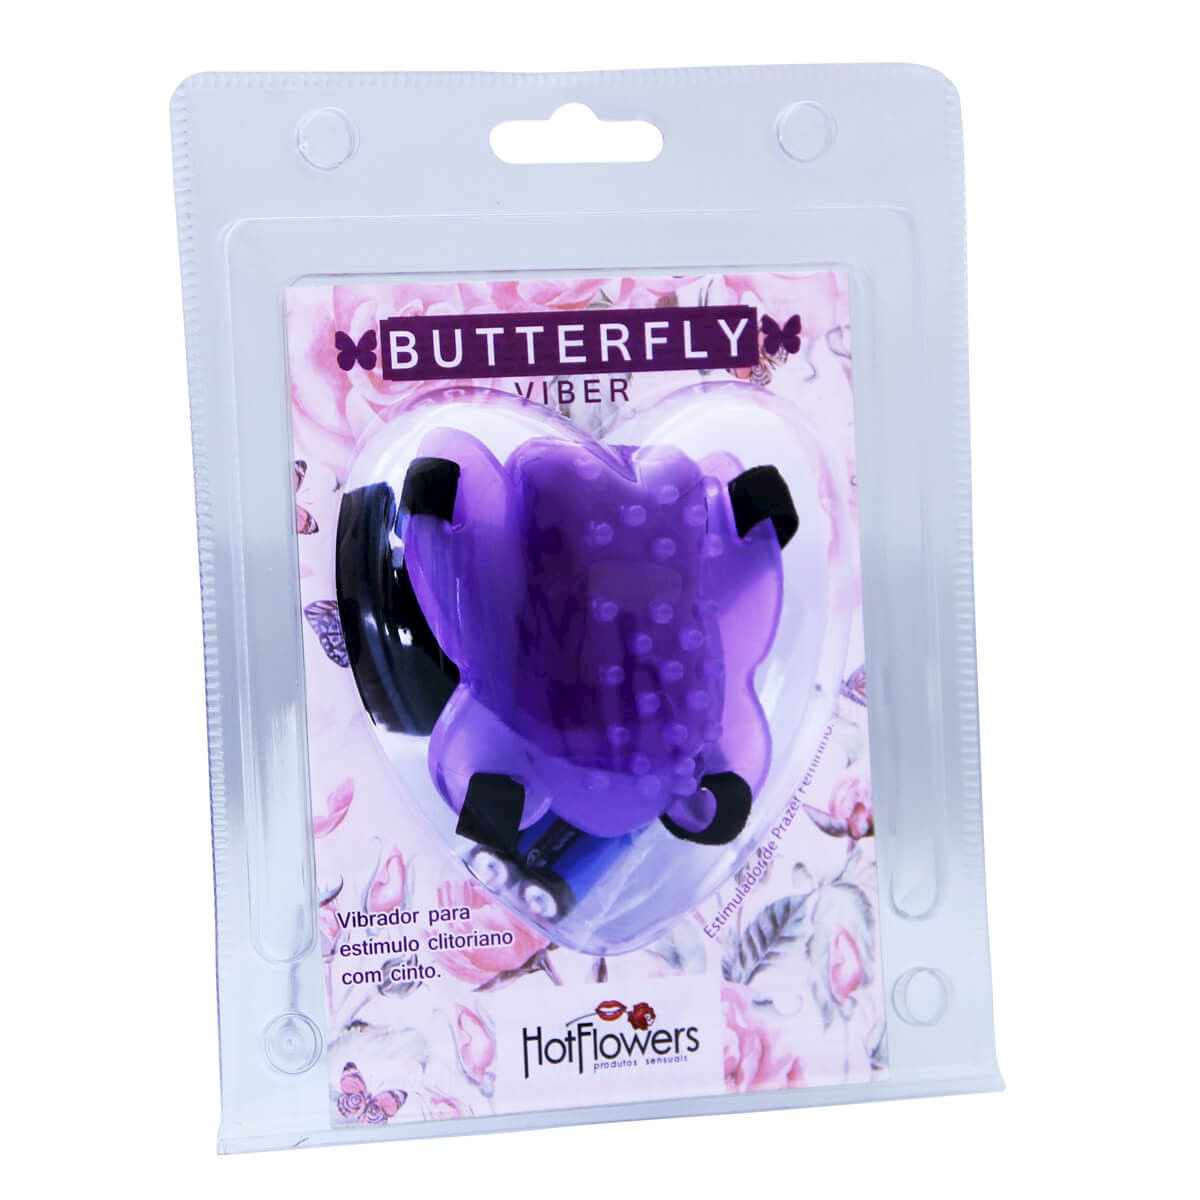 Butterfly Viber Vibrador para Estímulo Clitoriano com Cinta Hot Flowers